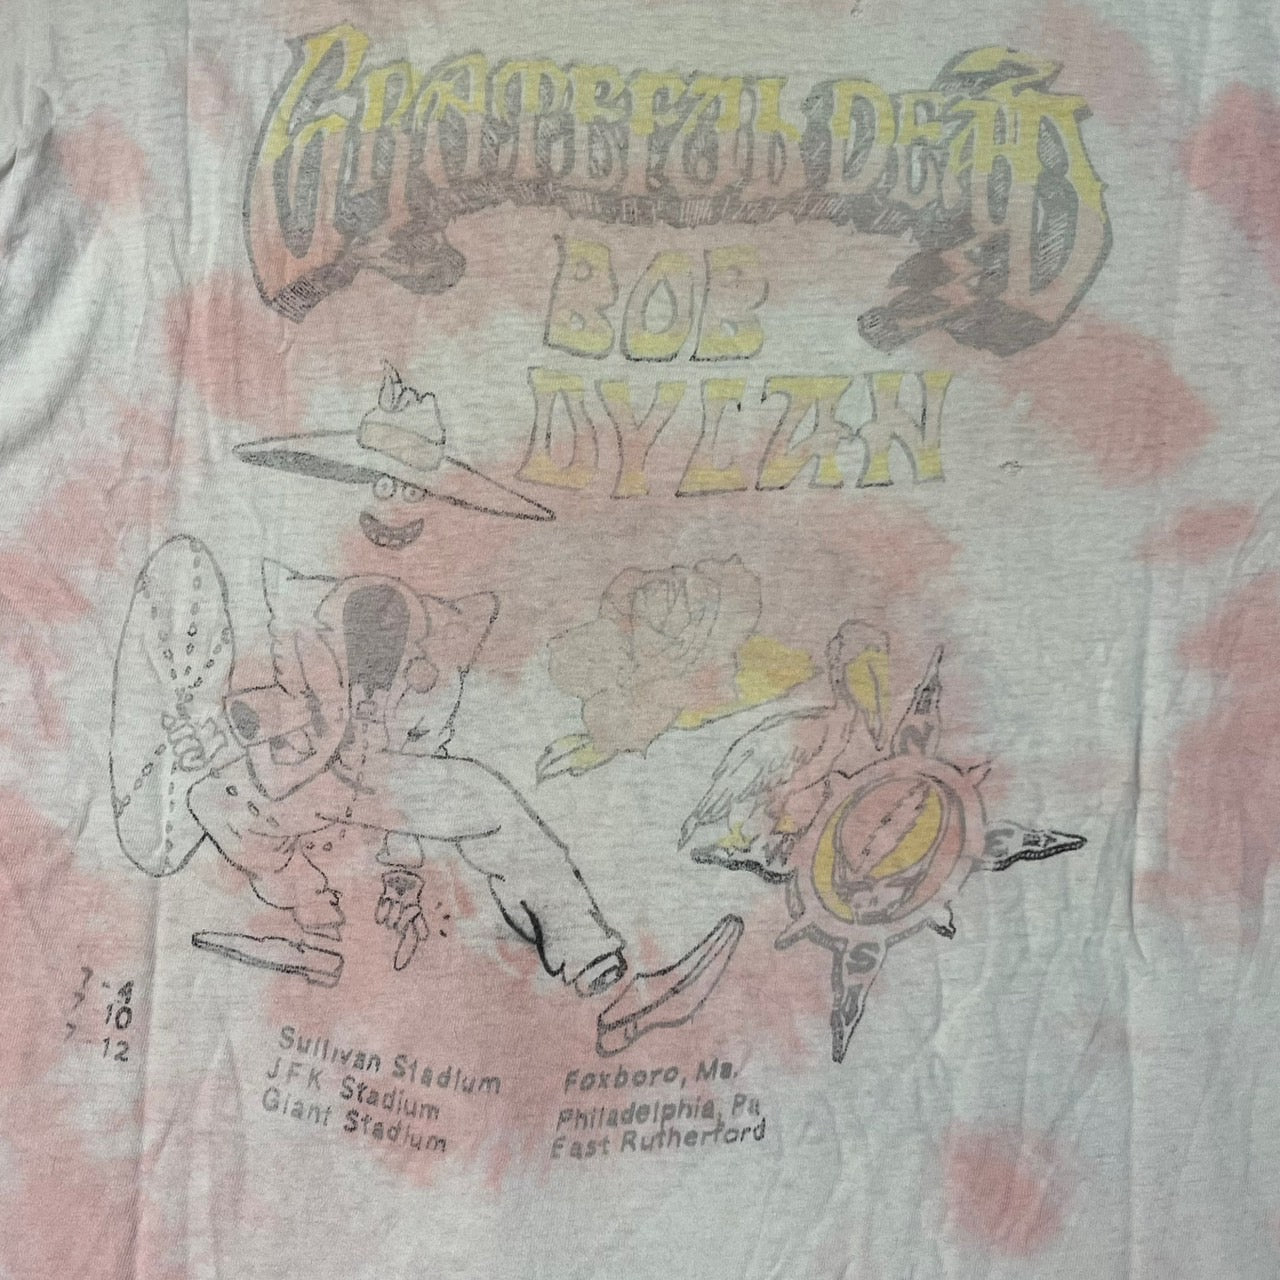 VINTAGE(ヴィンテージ) 90's "BOB DYLAN GRATEFUL DEAD" band Tee/バンドTシャツ 表記なし(Mサイズ程度) ホワイト×ピンク/タイダイ ボブ・ディラン & ザ・グレイトフル・デッド